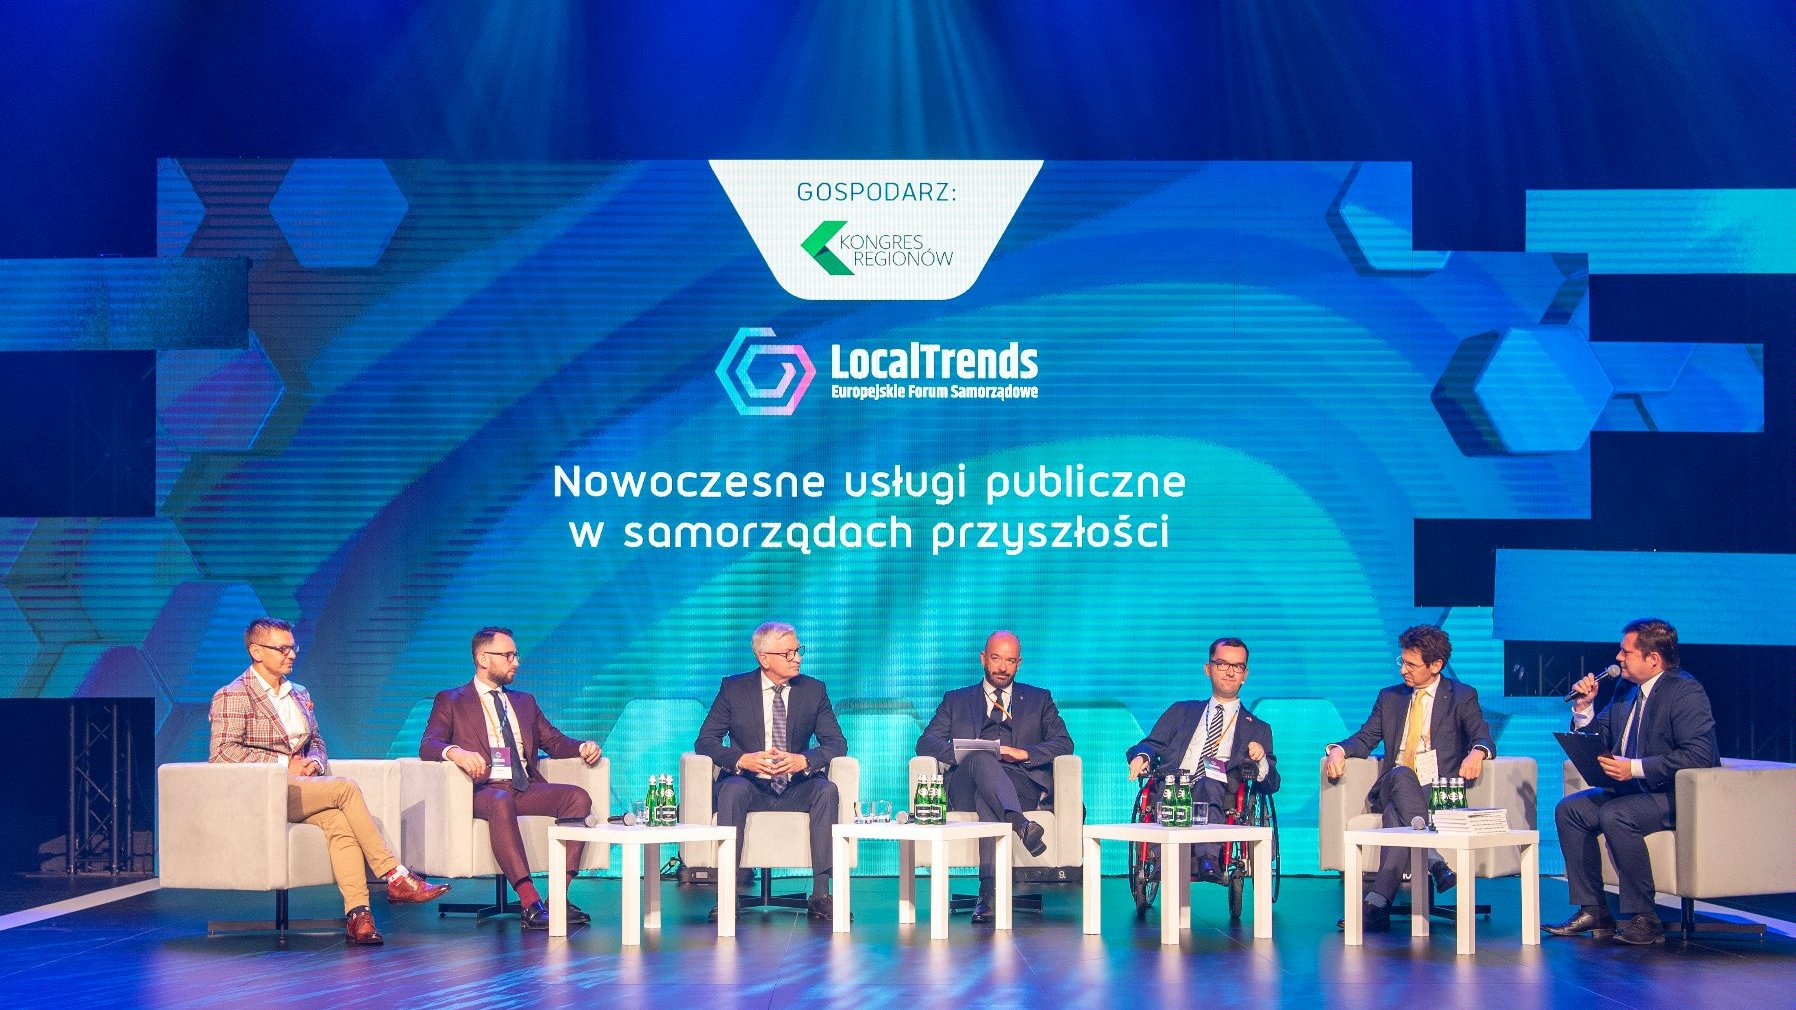 Local Trends Forum Samorzadowe